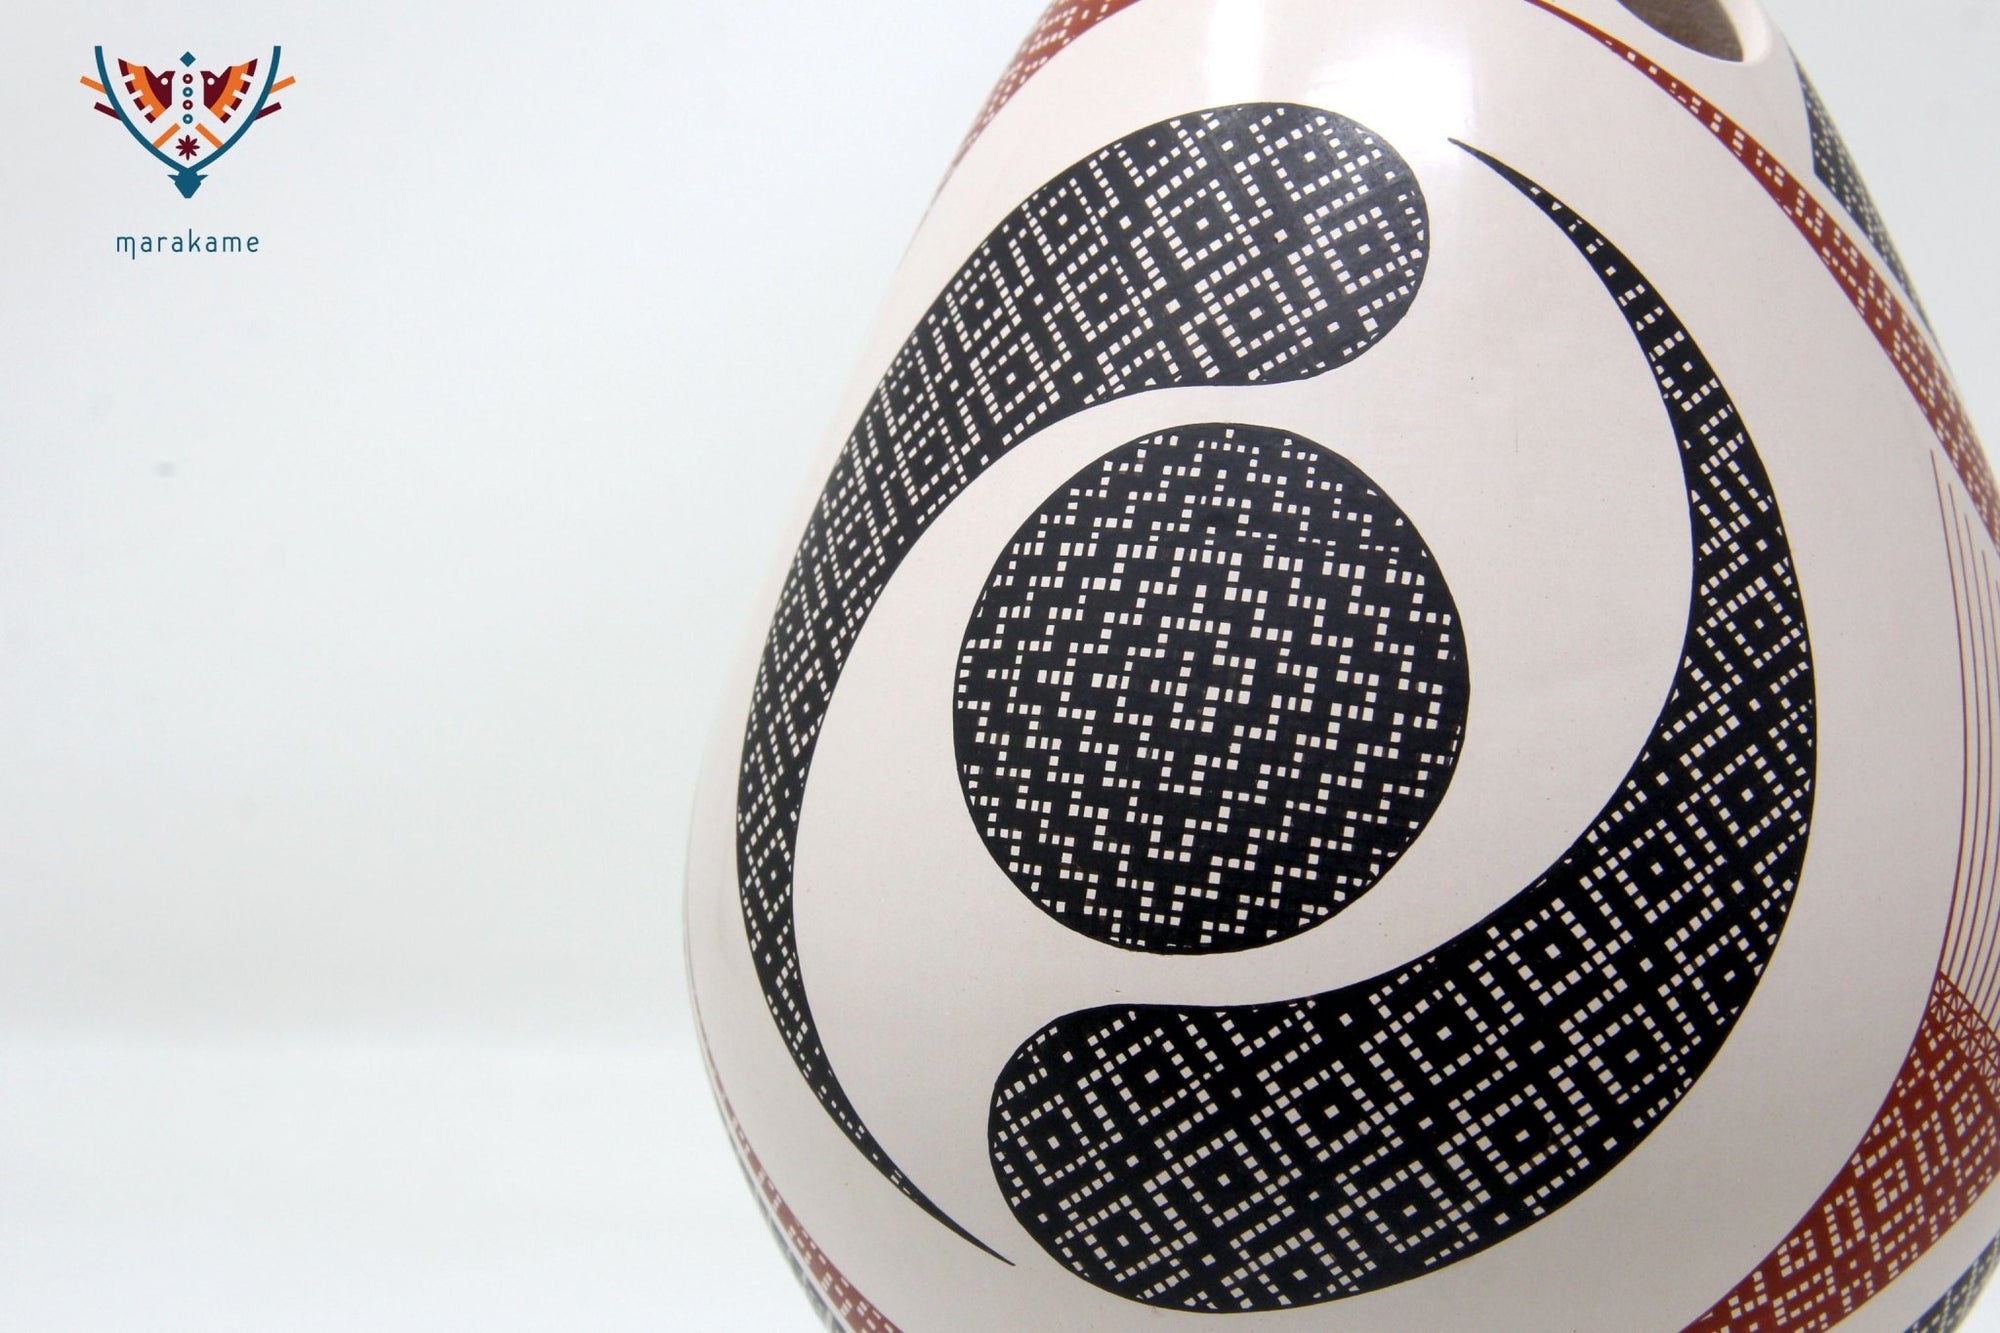 Mata Ortiz Keramik – Gitter – Huichol-Kunst – Marakame